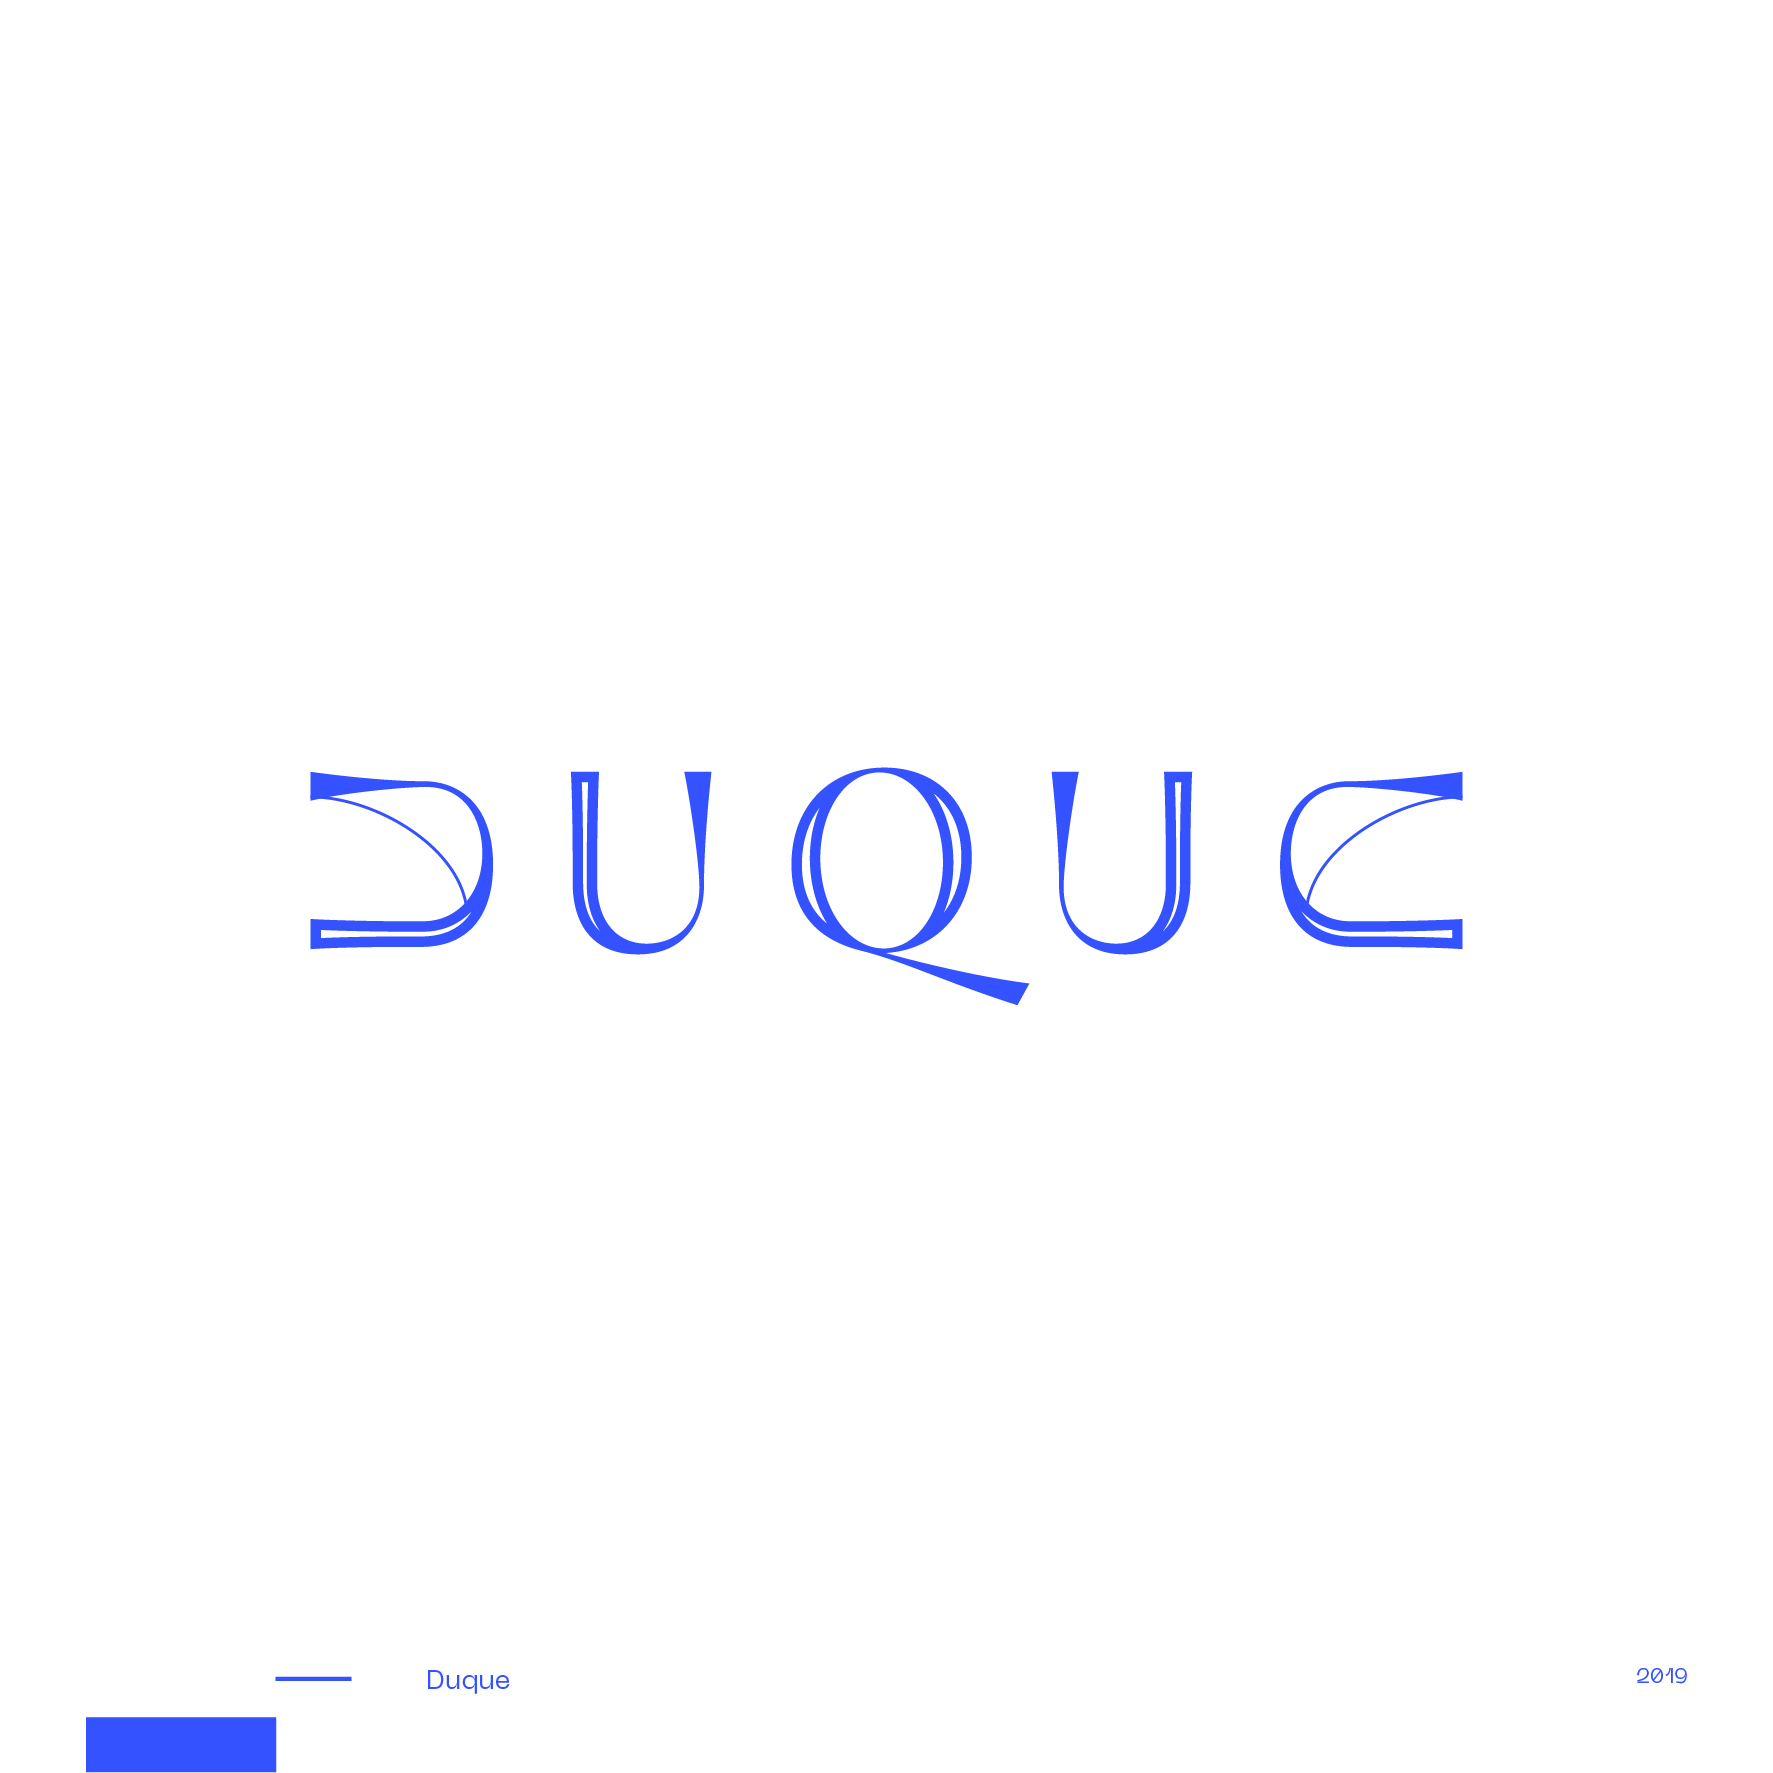 Guapo_Design_Studio_Logotype_Collection_Duque-1